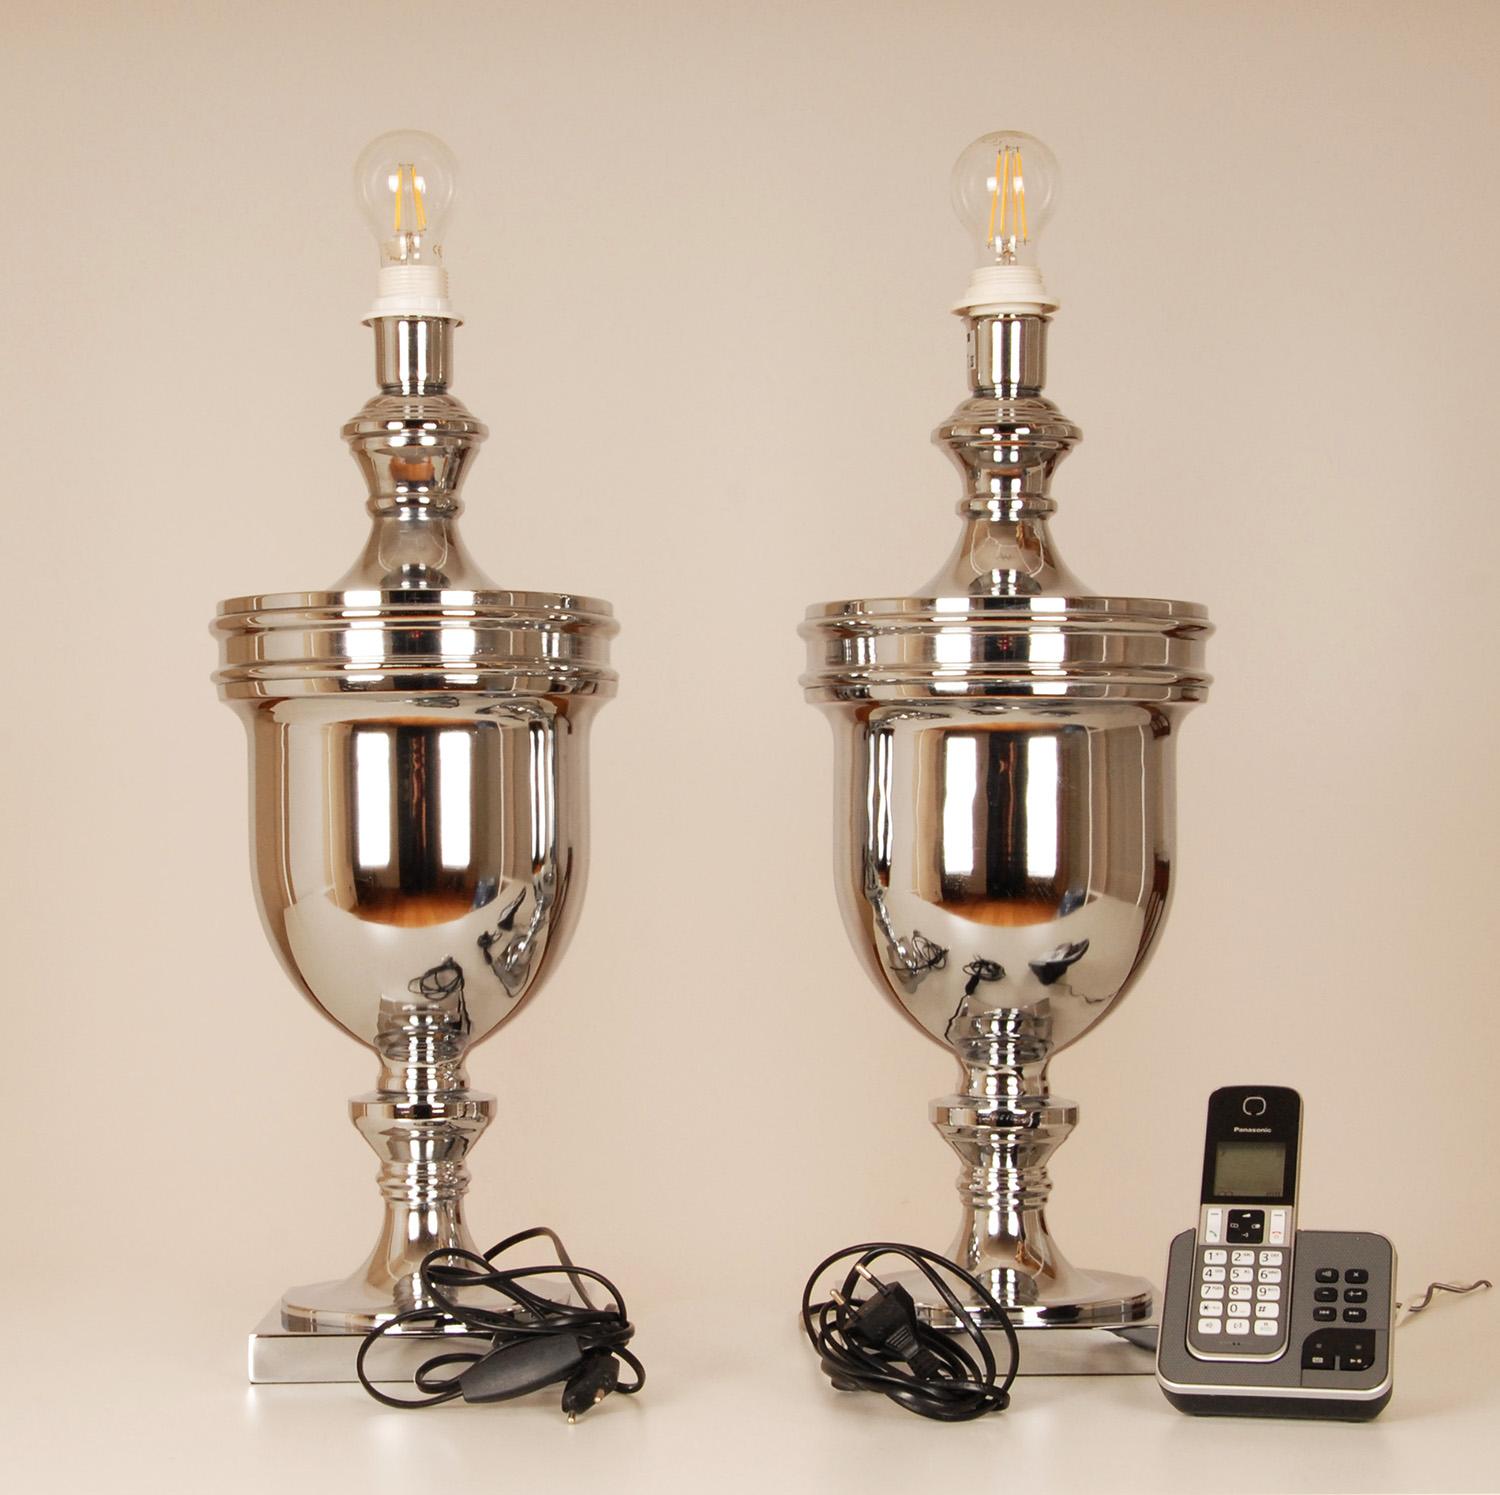 Tischlampen, Chrom, Silber, Königsblau, Moderne, hohe Tischlampen, Paar (Stoff)